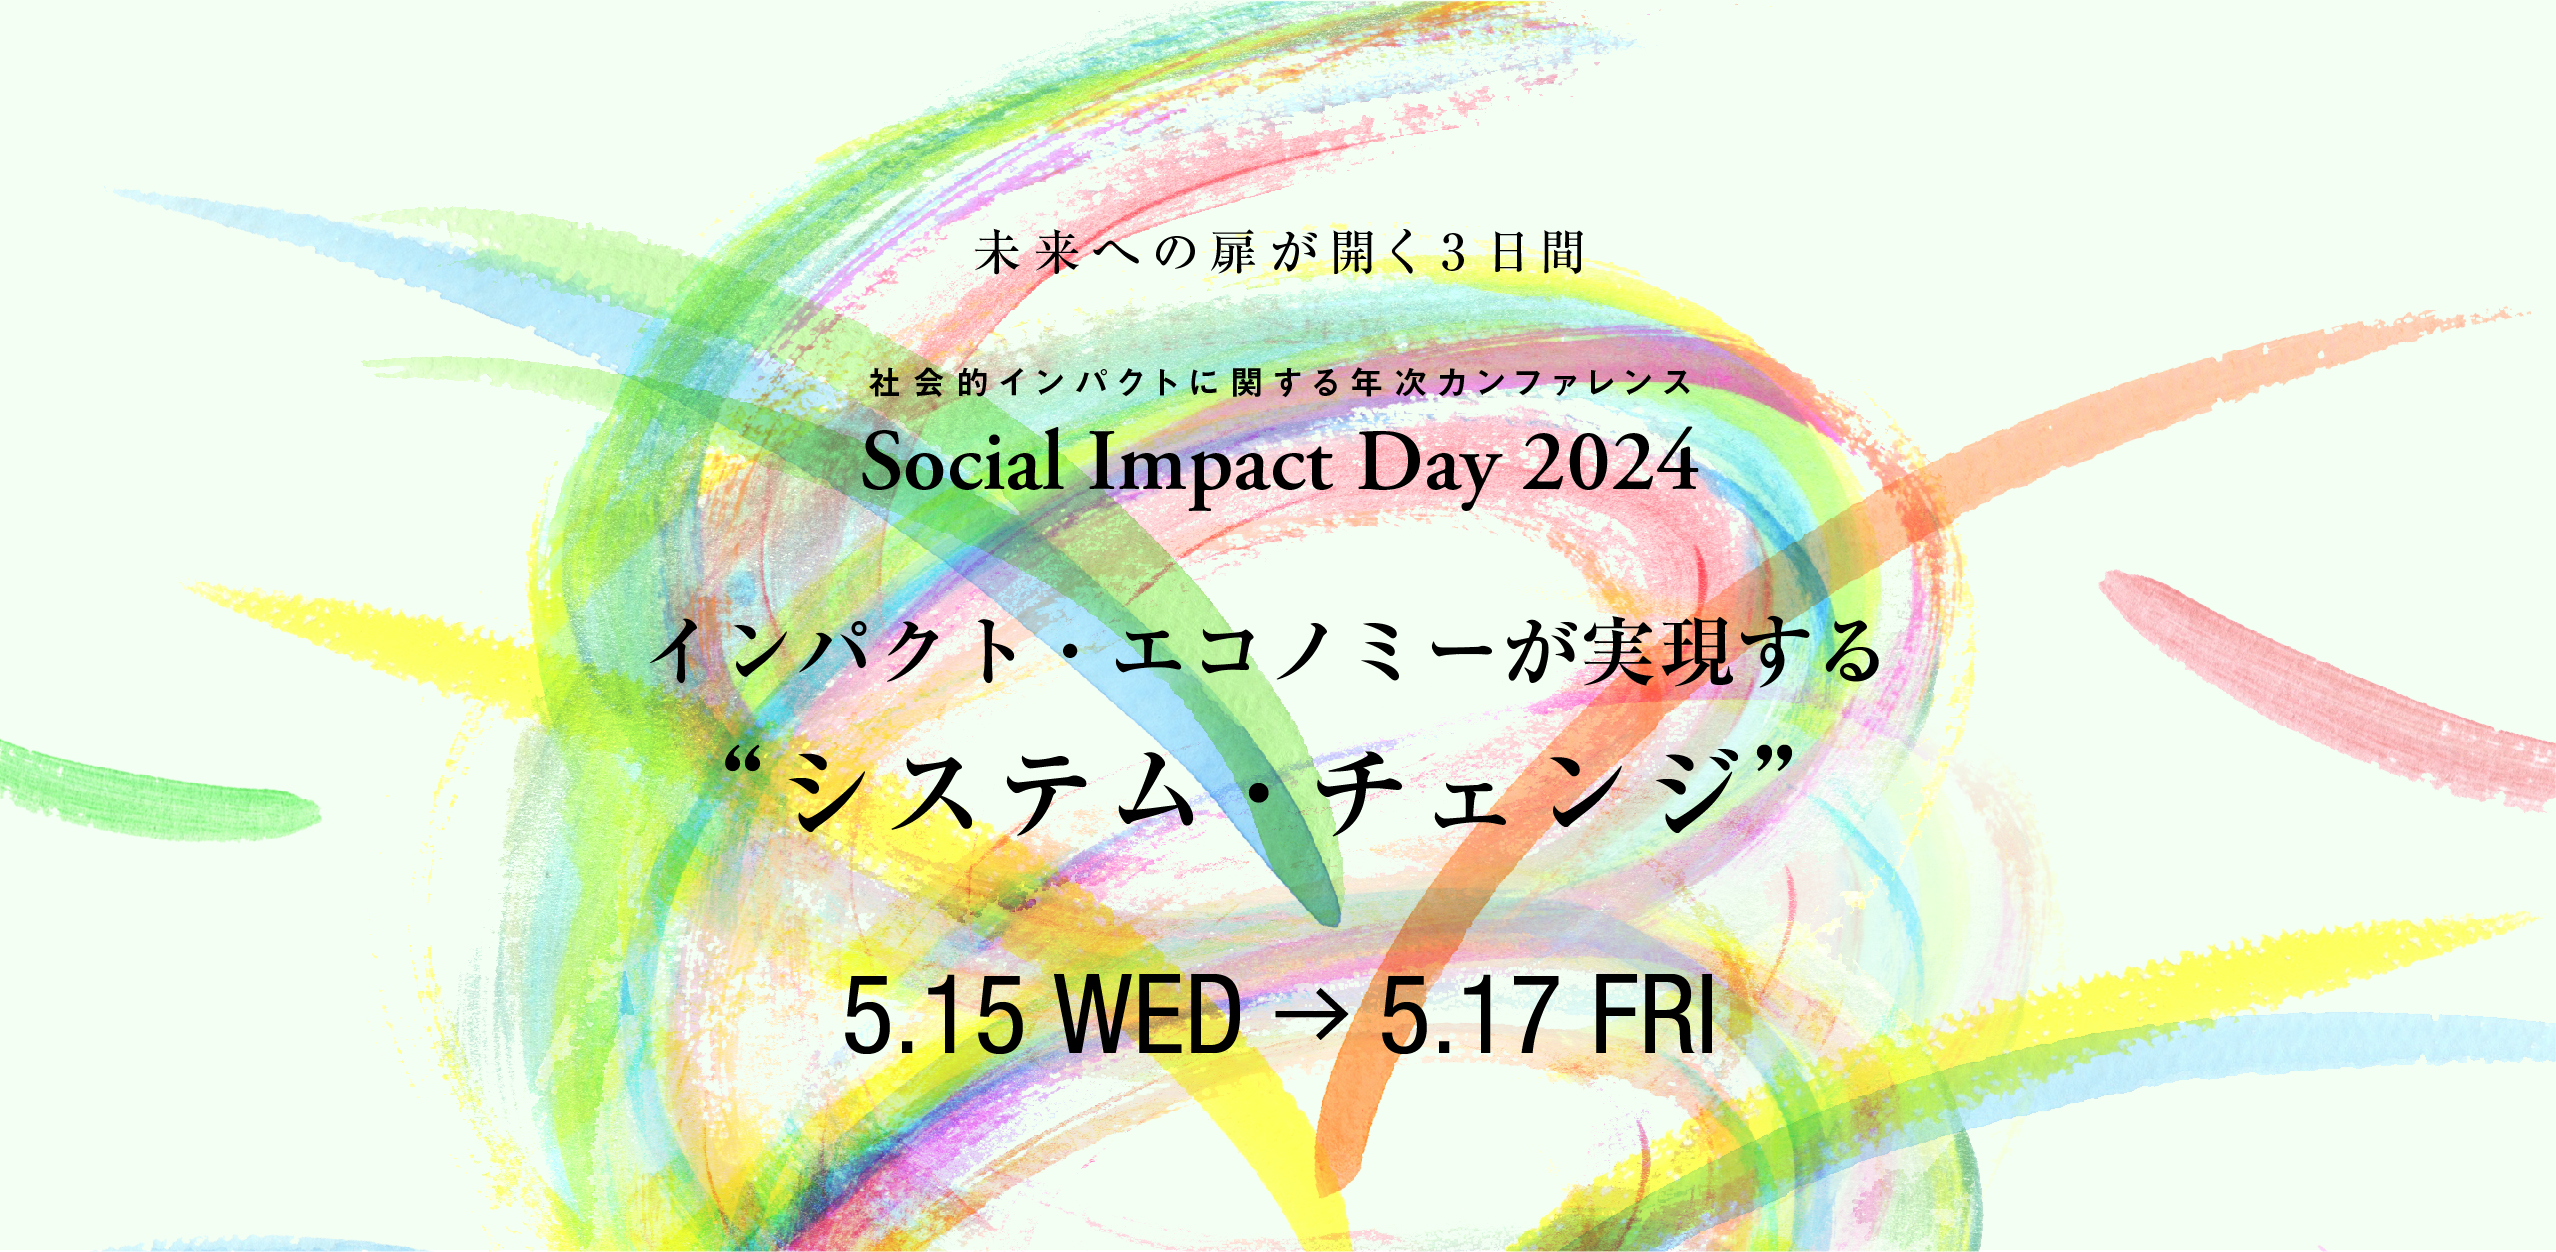 【特設サイト公開】Social Impact Day 2024 参加申込受付中